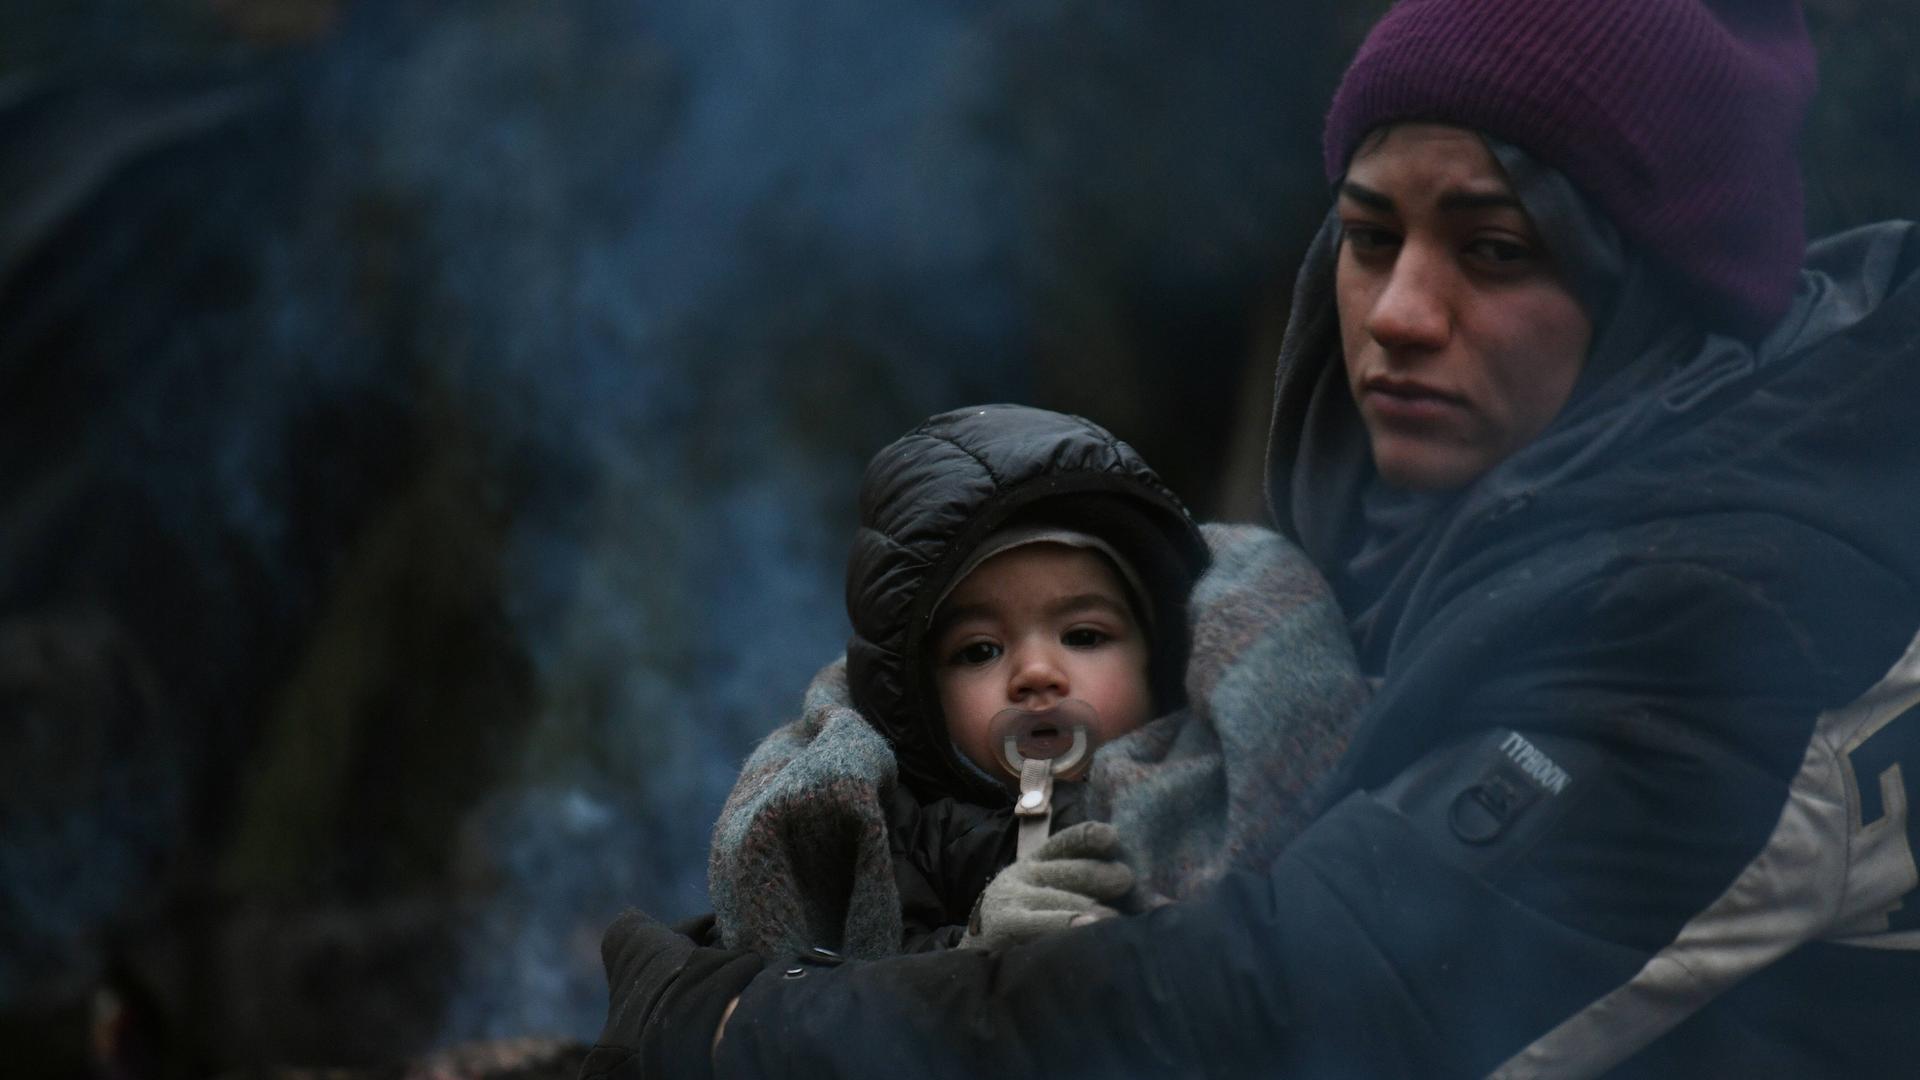 Frau mit Kind wärmt sich am Feuer: Flüchtlinge in Belarus an der Grenze zu Polen.